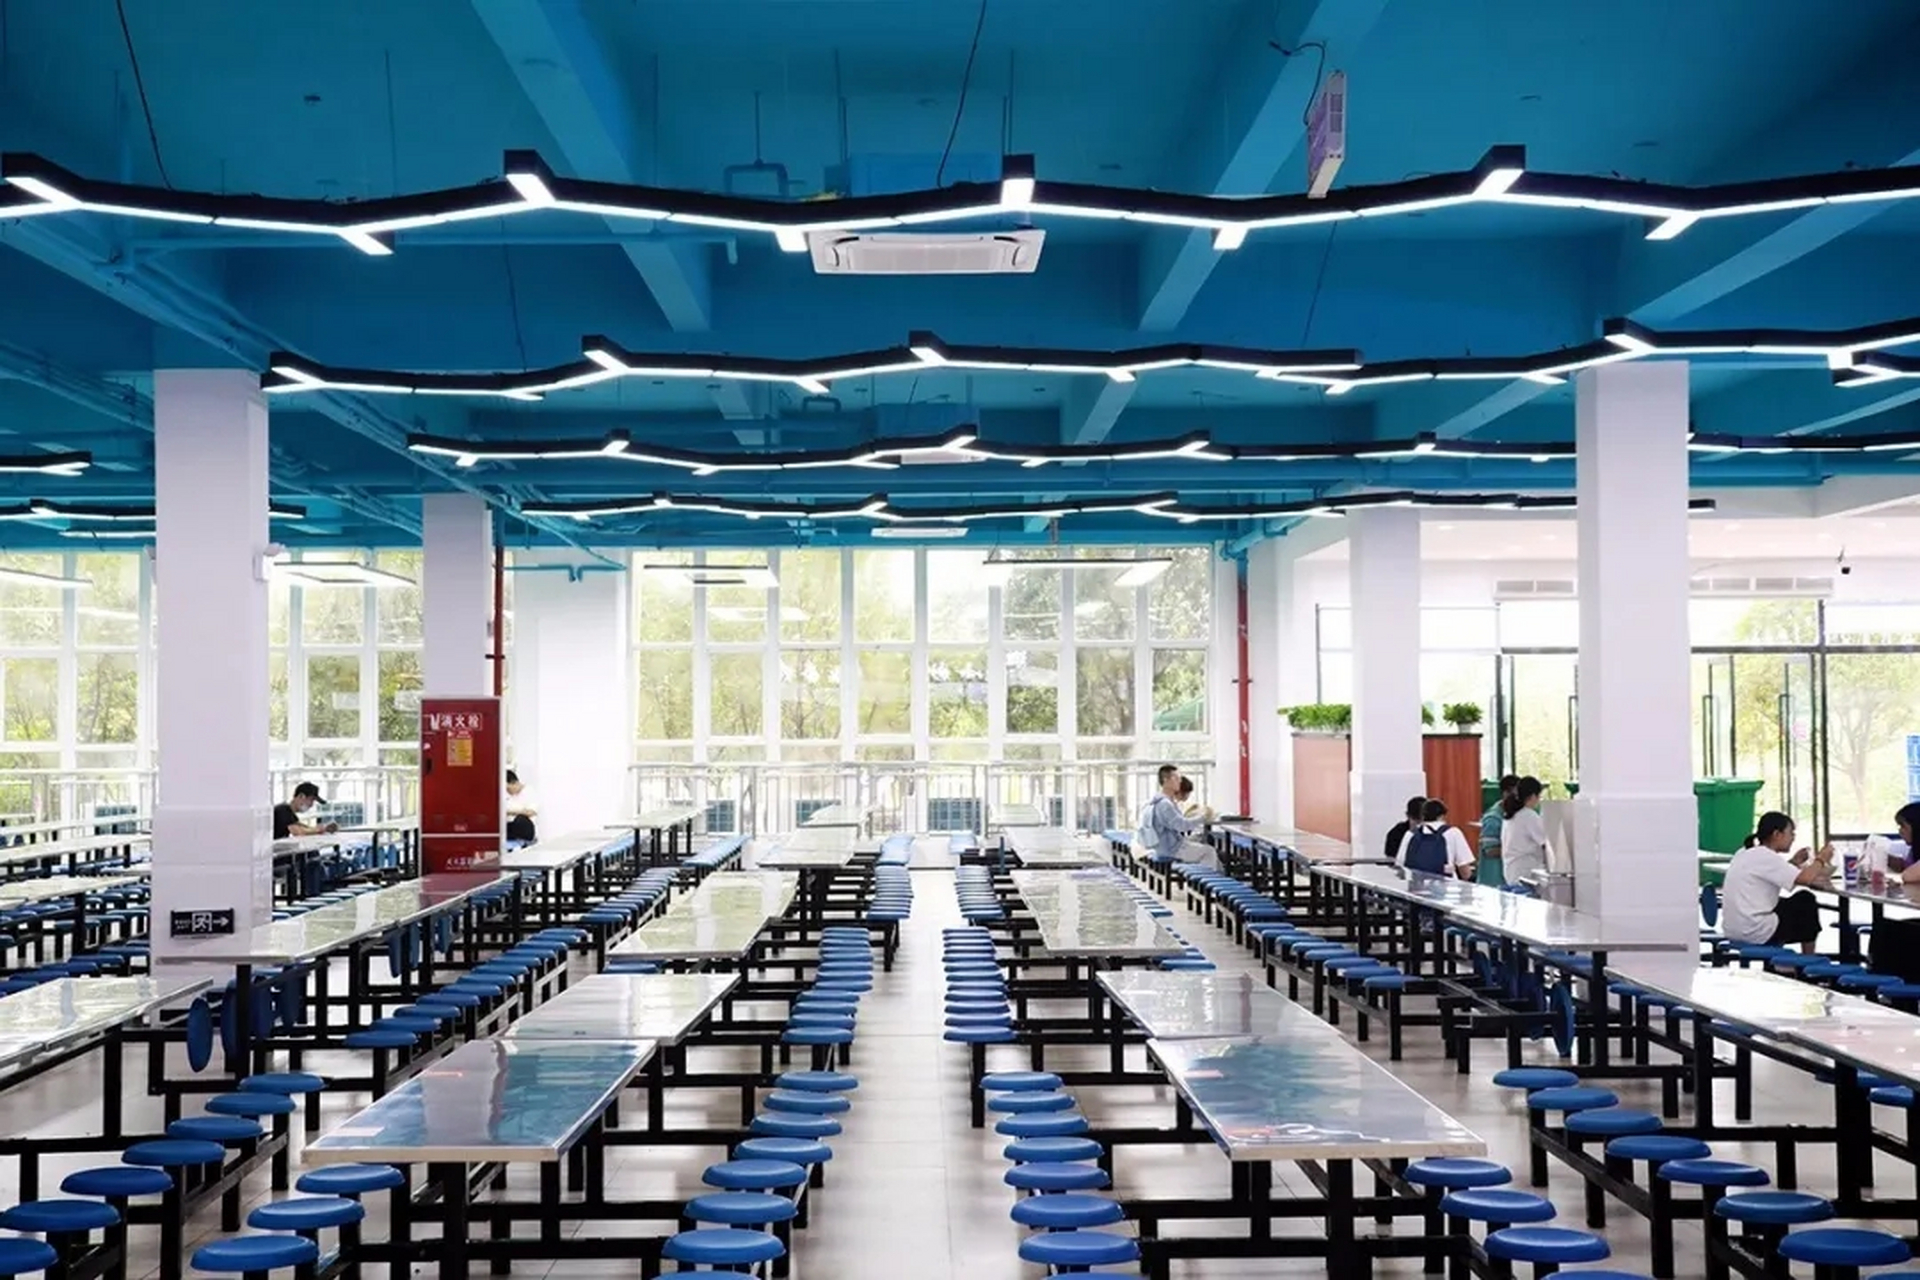 西南交通大学希望学院的食堂拥有一场无比的嗅觉盛宴,蓝色机械风格的